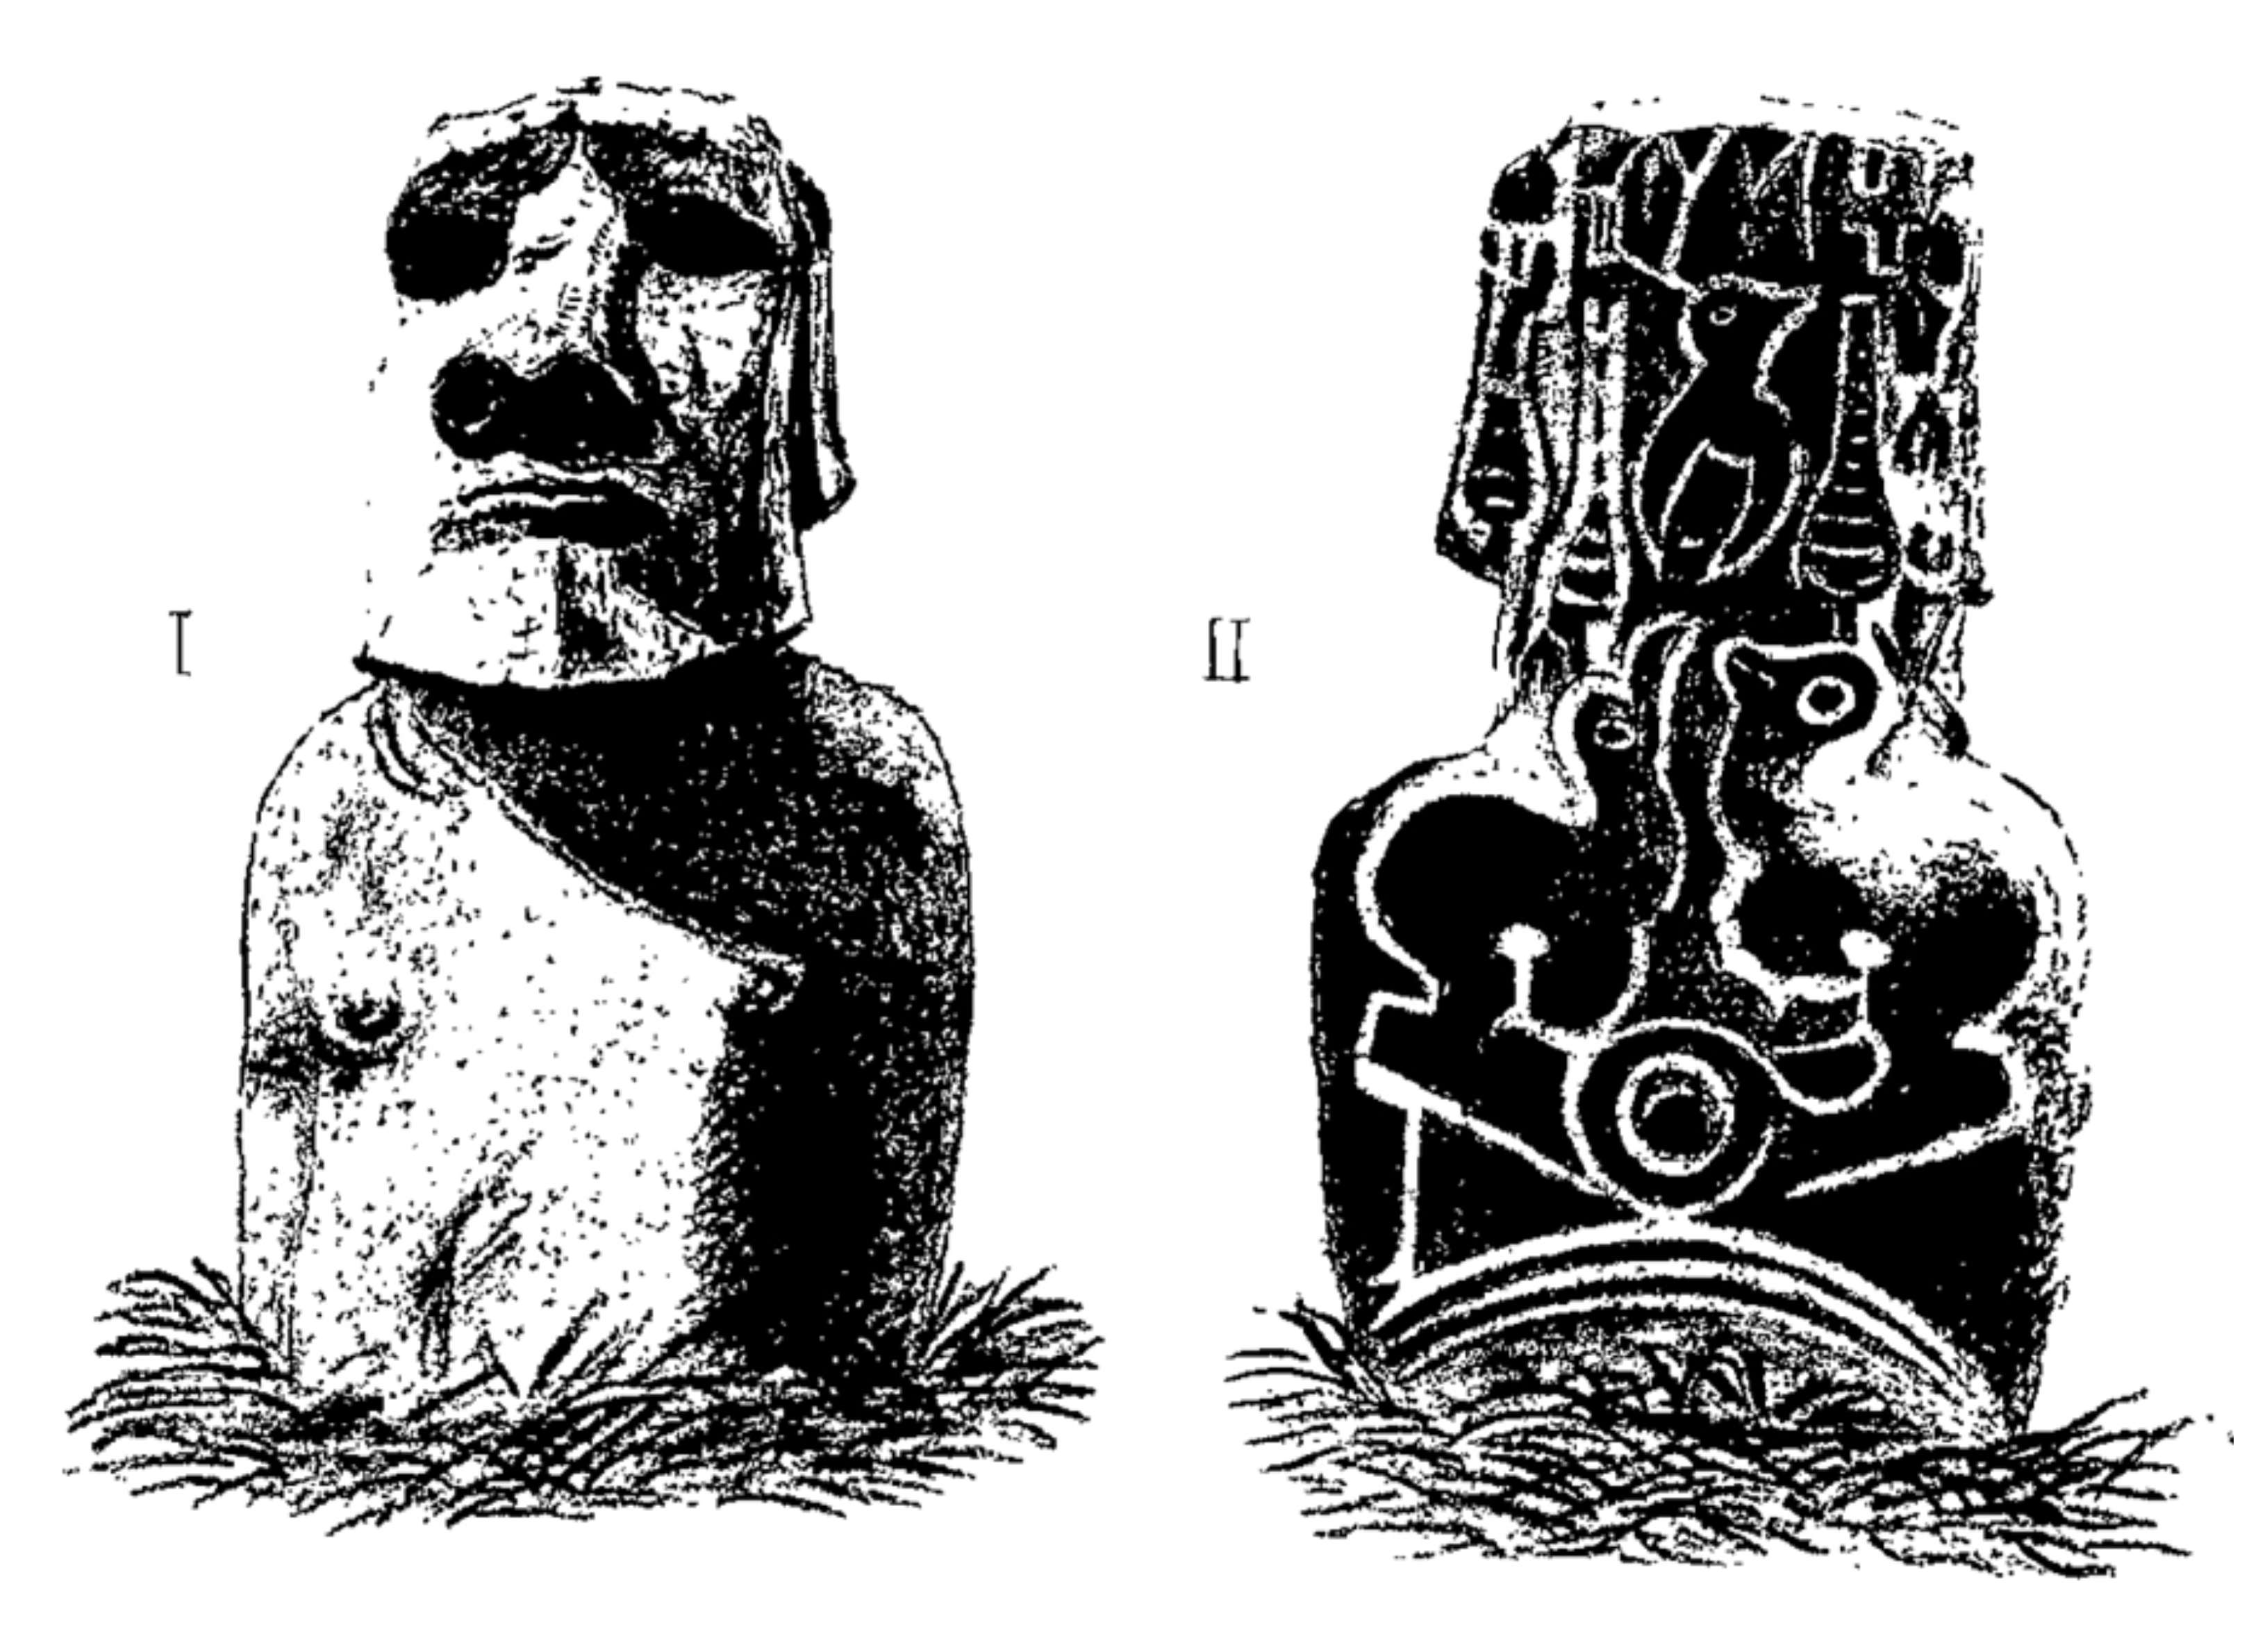 Representación gráfica de cómo los ingleses encontraron enterrado al moái (Wikimedia)